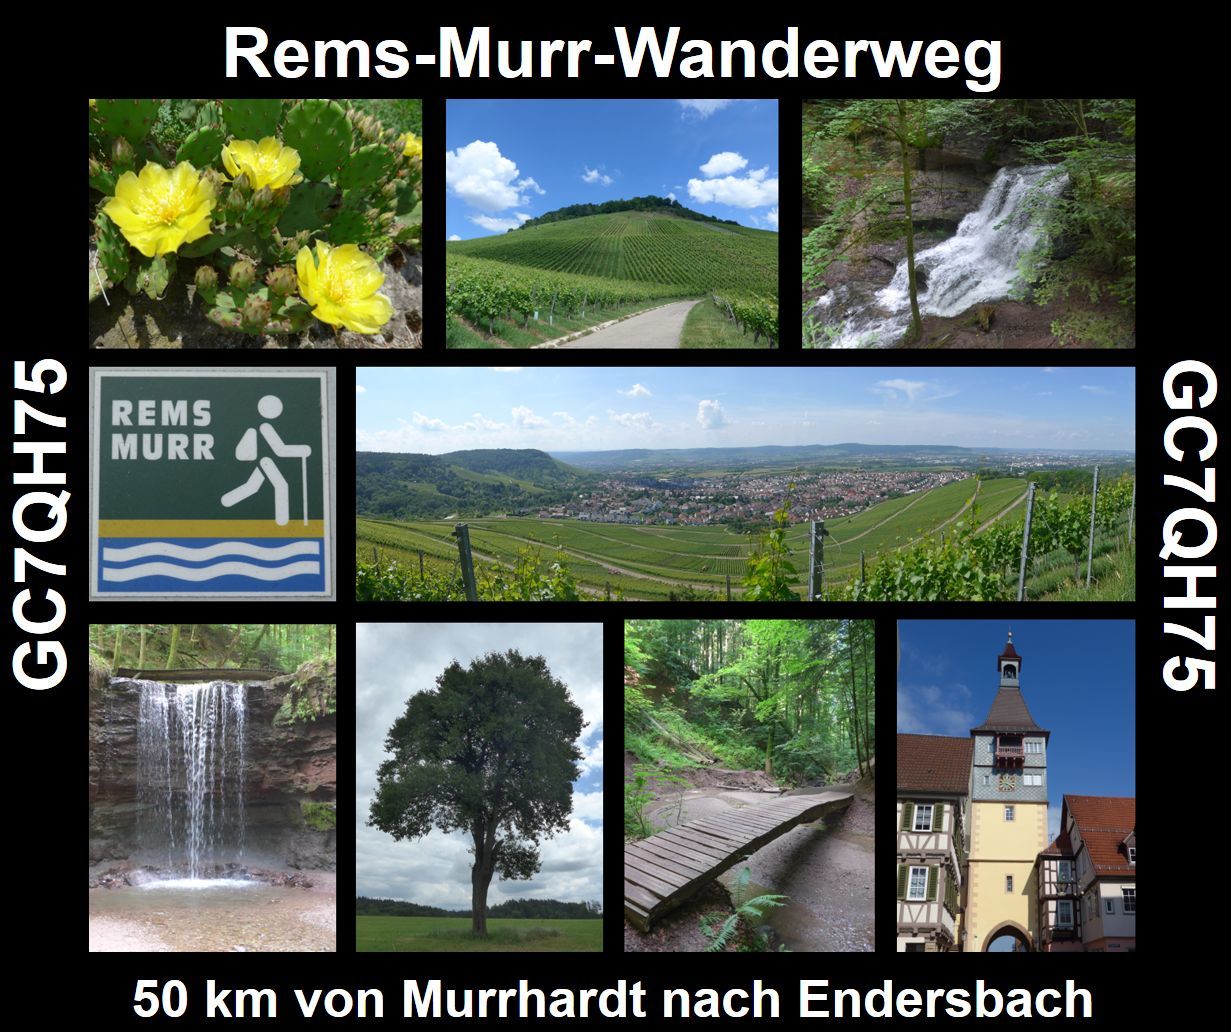 Rems-Murr-Wanderweg